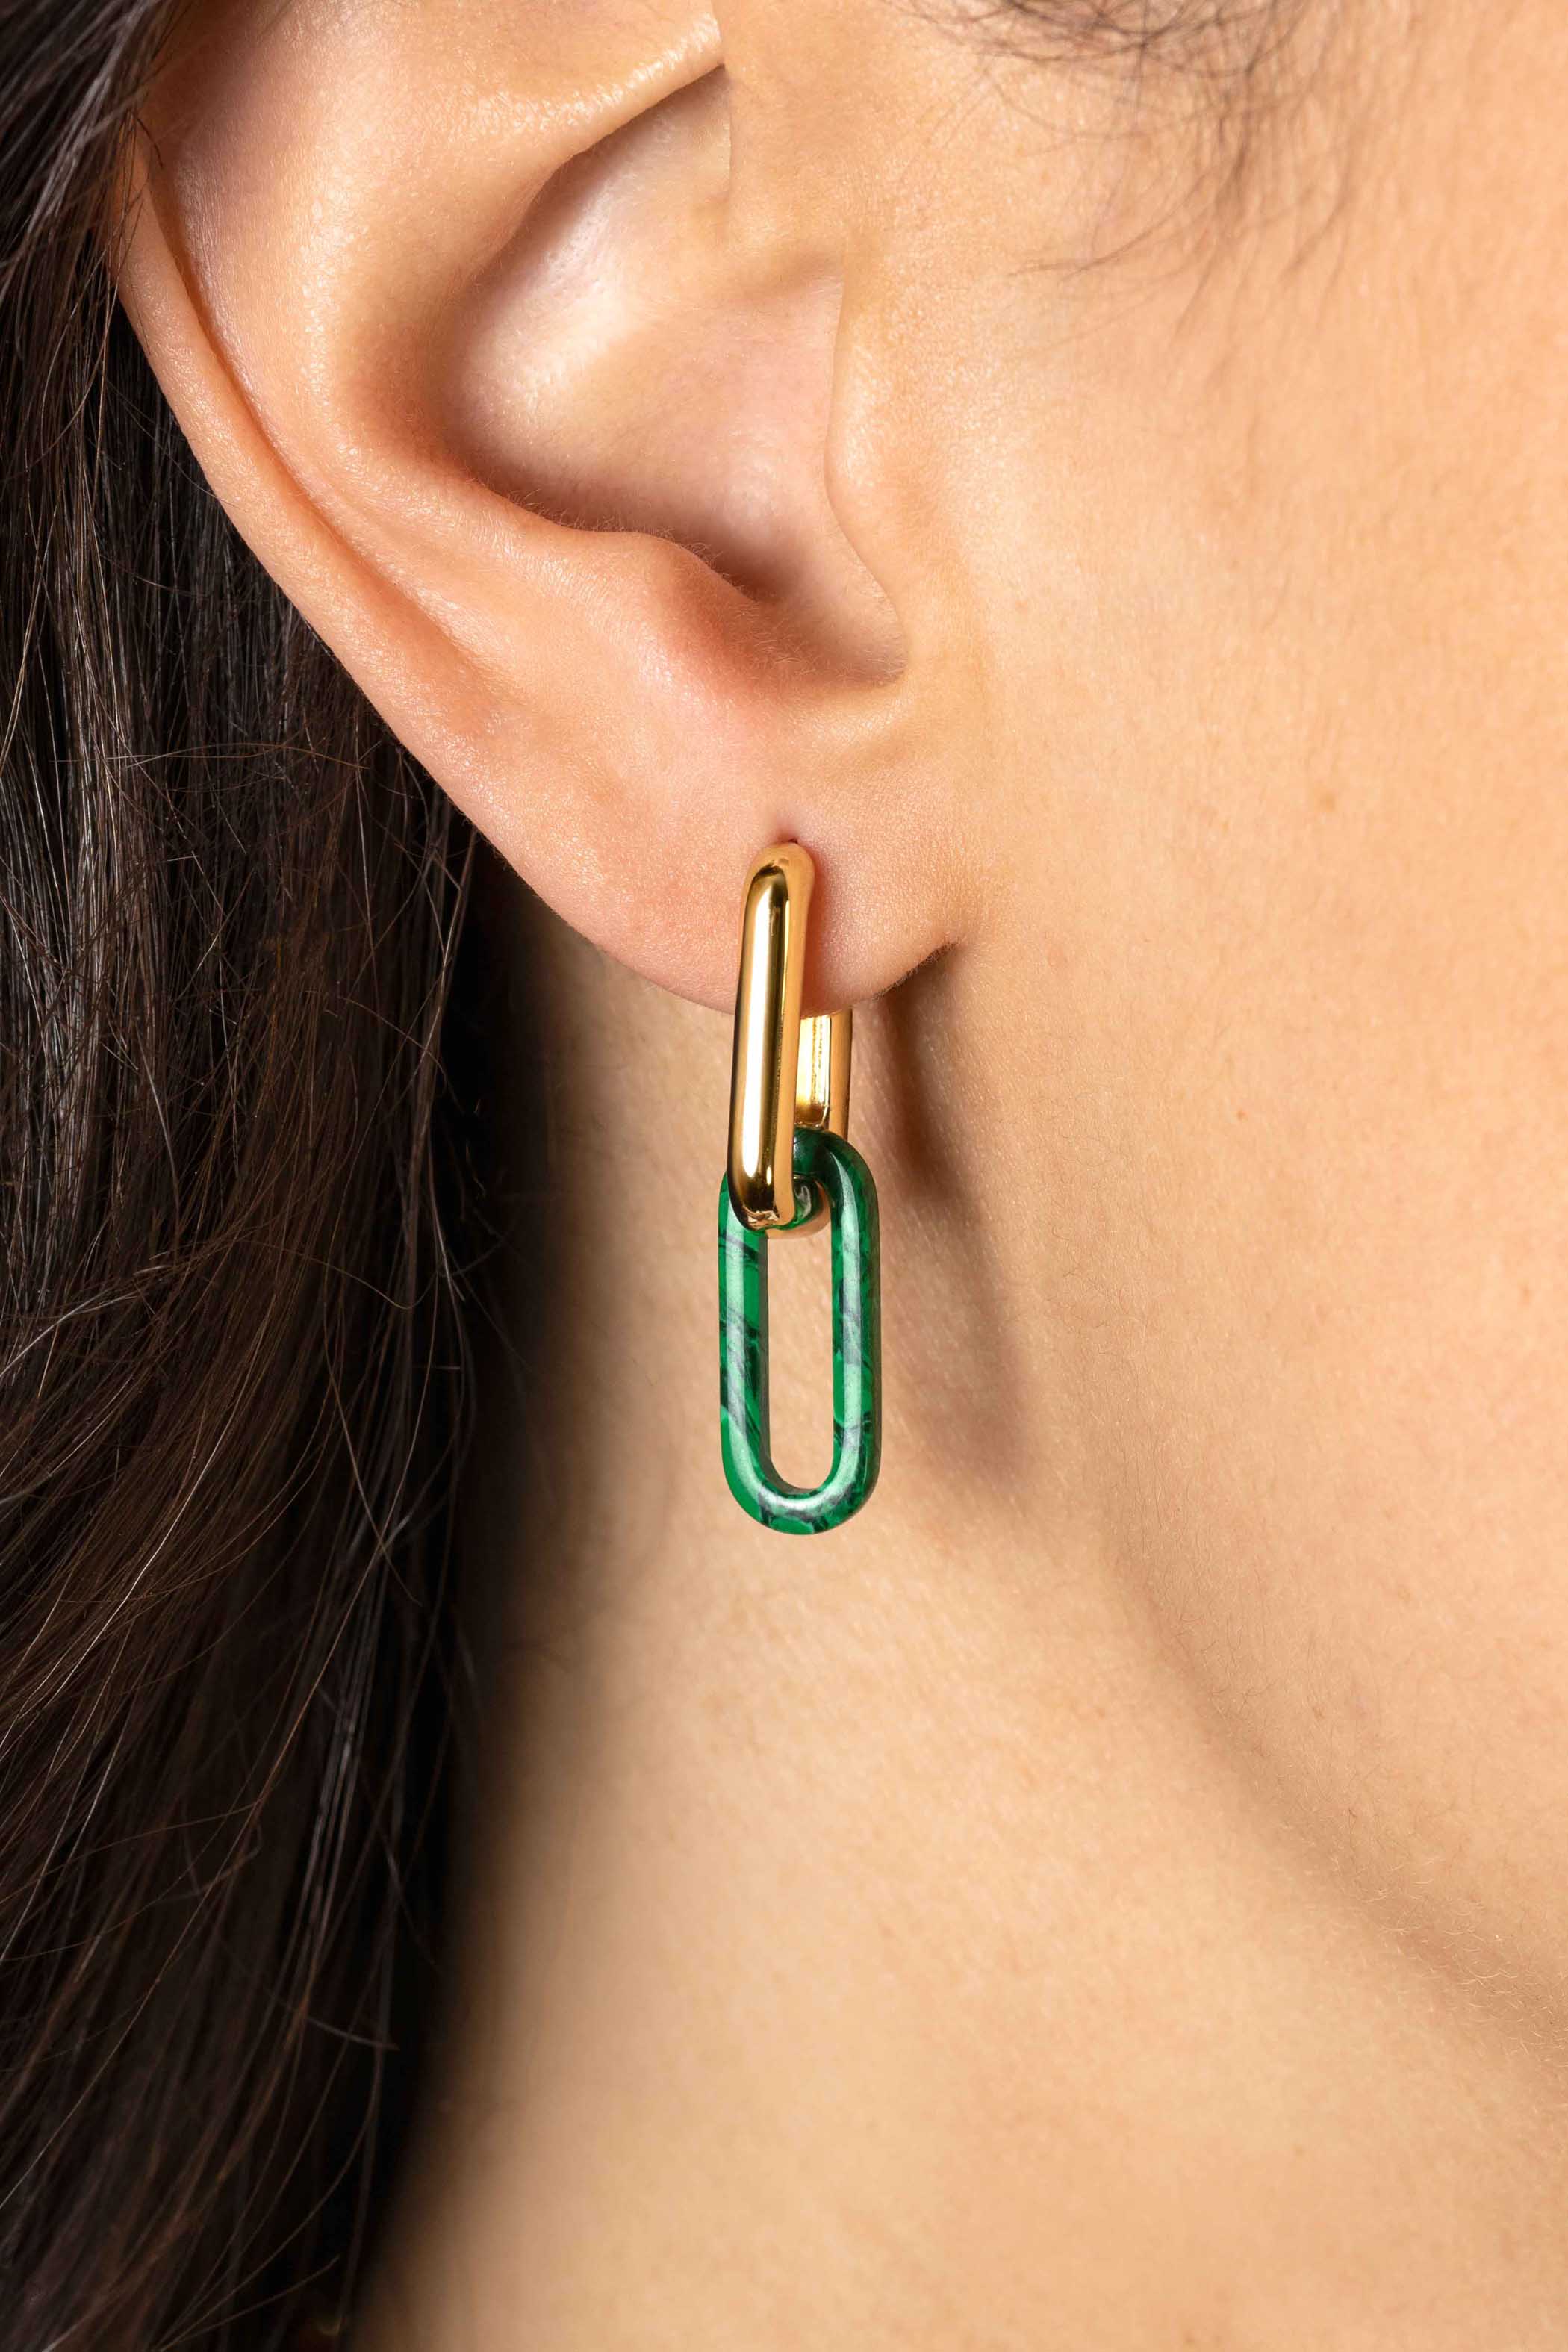 19mm ZINZI ovale oorbedels in trendy malachiet groen ZICH2455G (zonder oorringen)